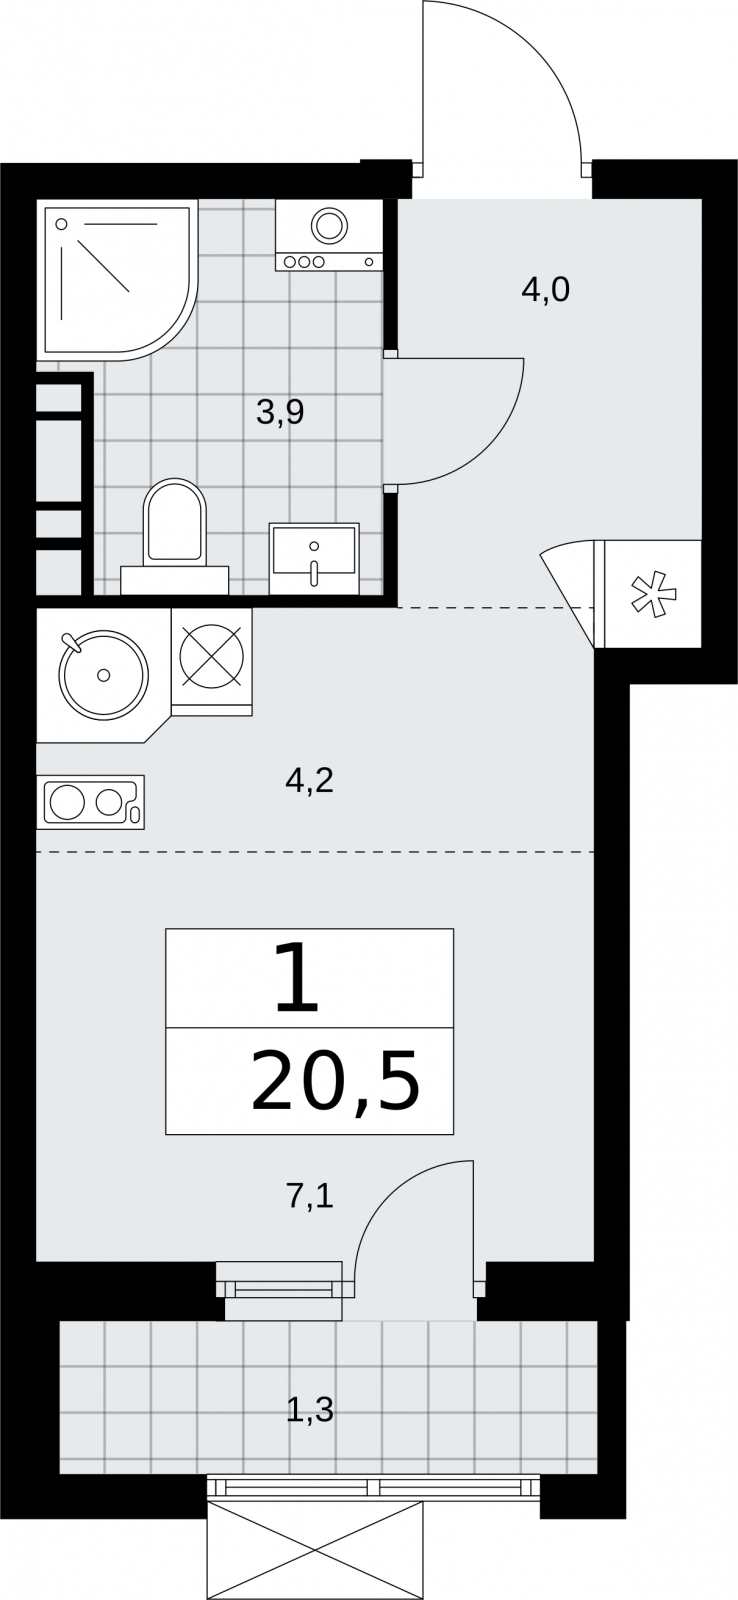 Продается просторная 1-комнатная квартира с отделкой в новом ЖК, недалеко от метро